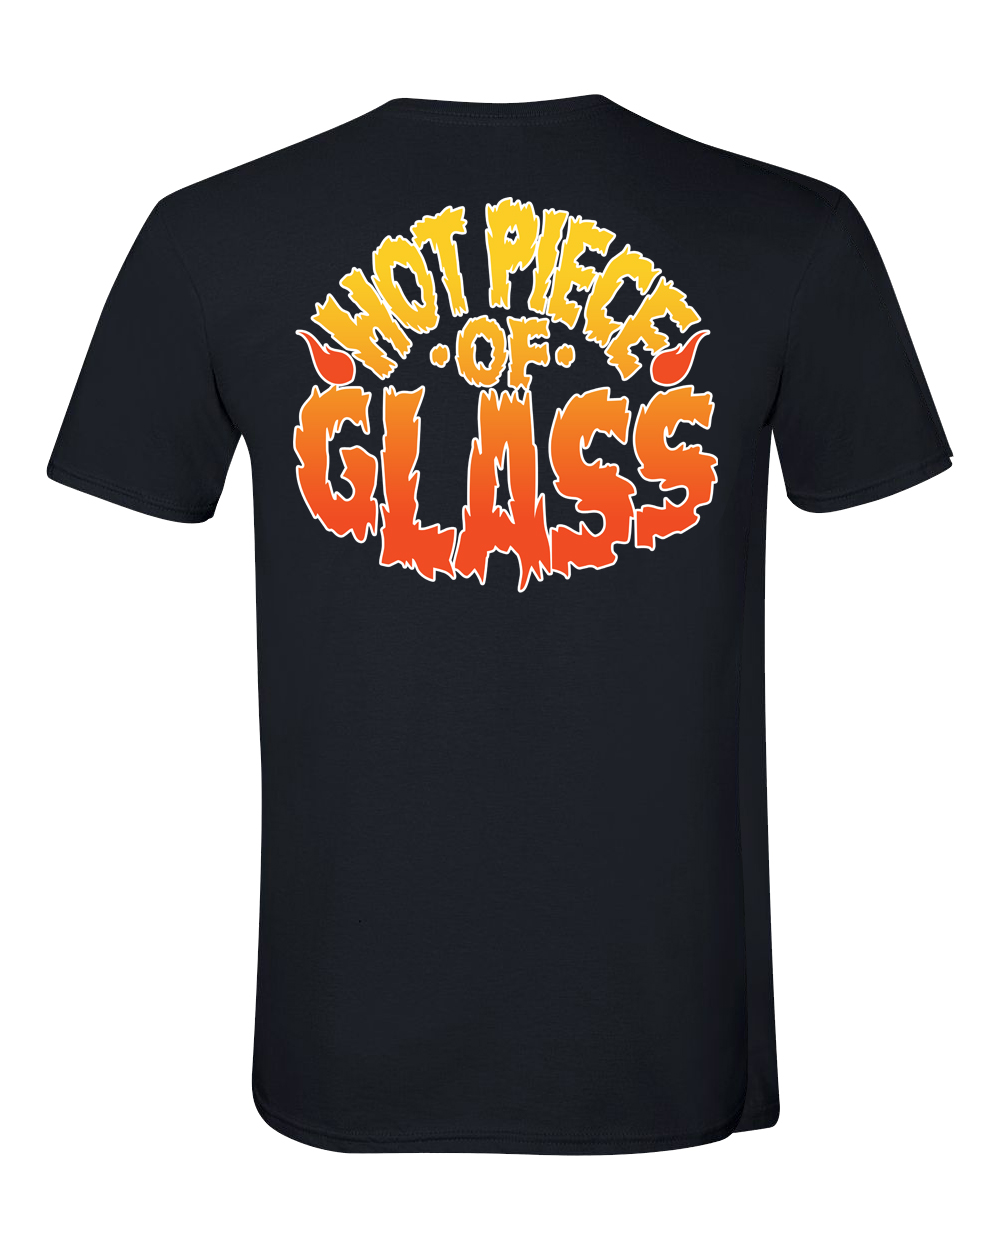 Hostess City Hot Glass “Hot Piece of Glass” unisex t-shirt